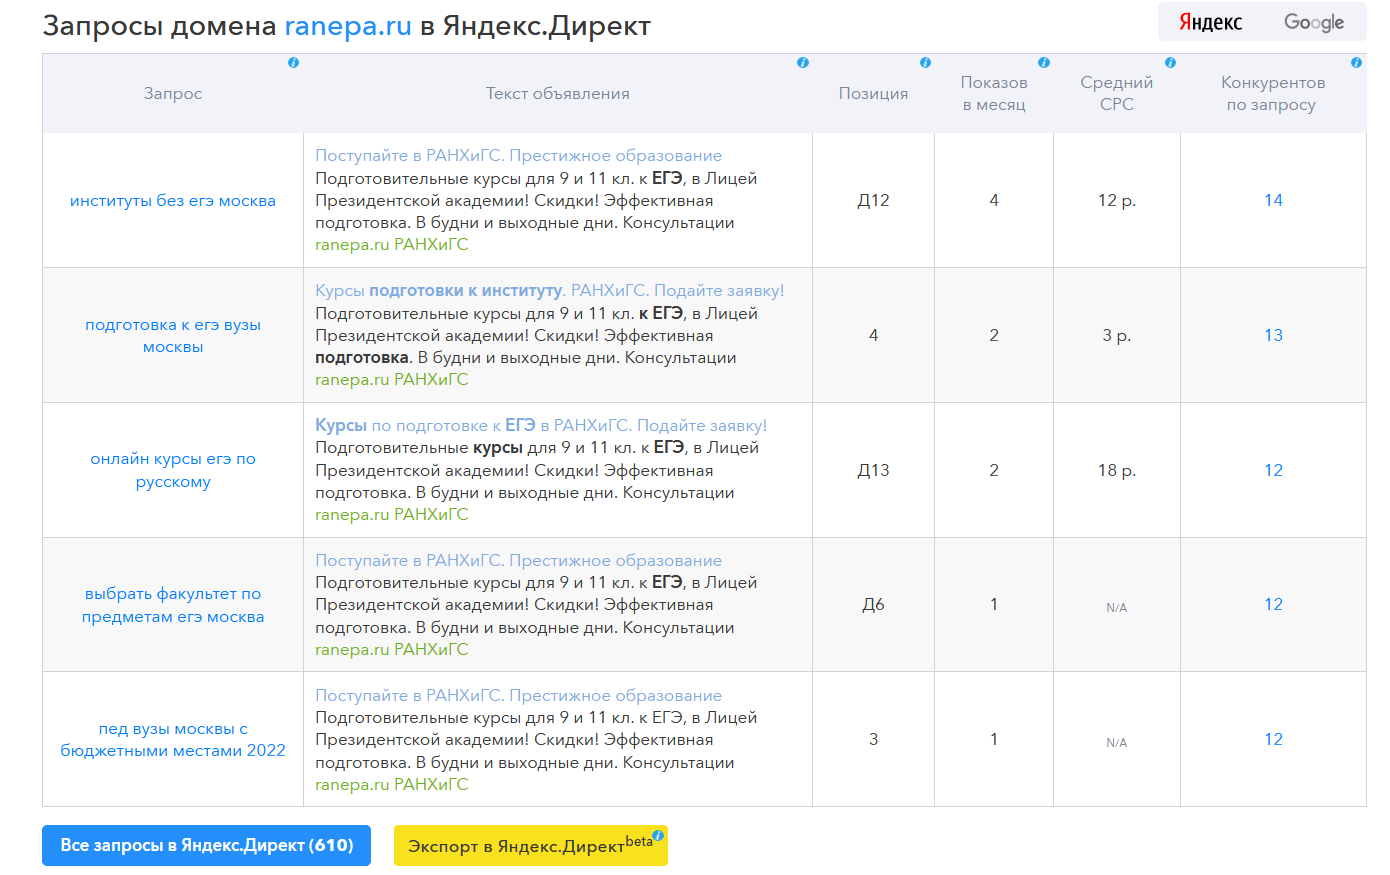 SpyWords - показывает Запросы домена ranepa.ru в Яндекс.Директ